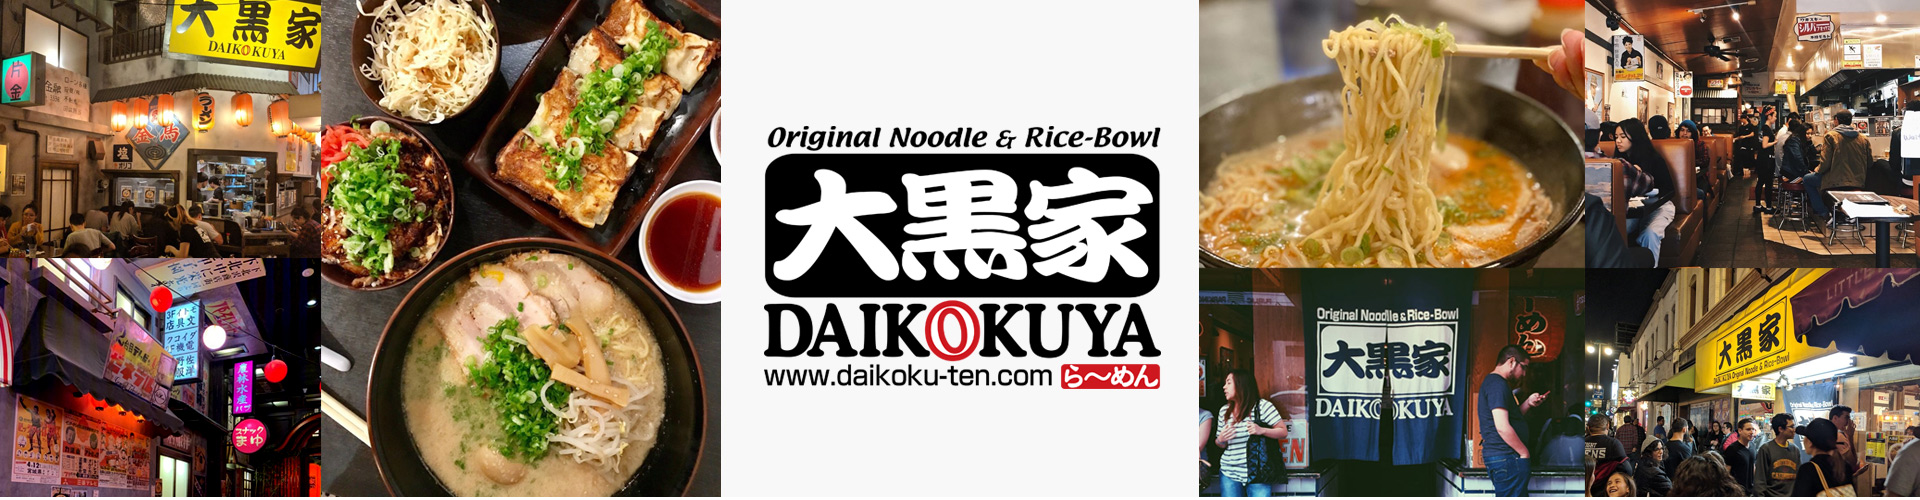 Original Noodle & Rice-Bowl DAIKOKUYA らーめん